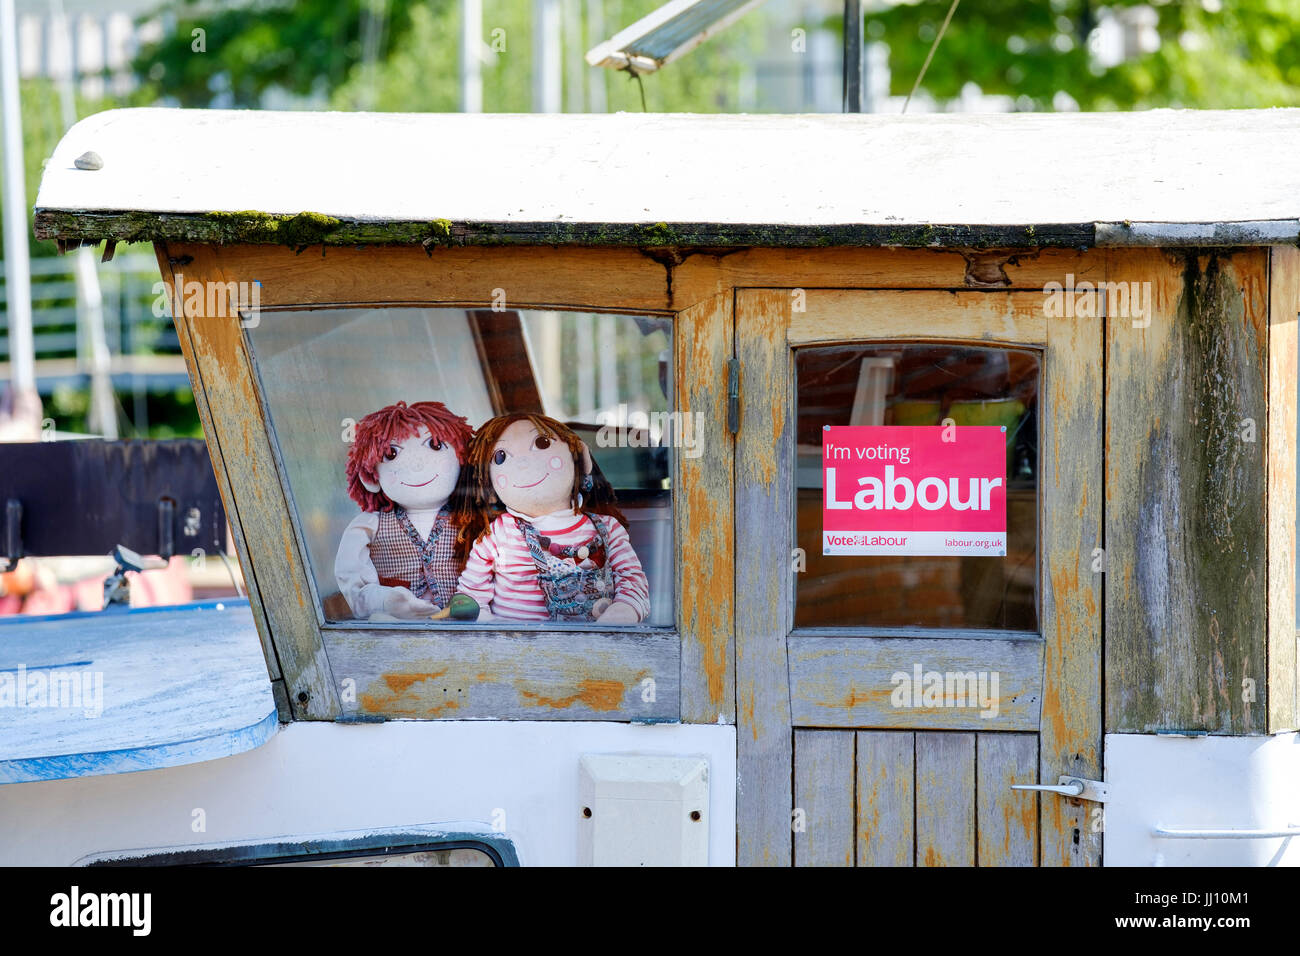 Un voto partido laborista cartel aparece en un barco atraca en la ciudad de Bristol, por su lado, dos Rosie y Jim cuento infantil personajes en busca del Foto de stock